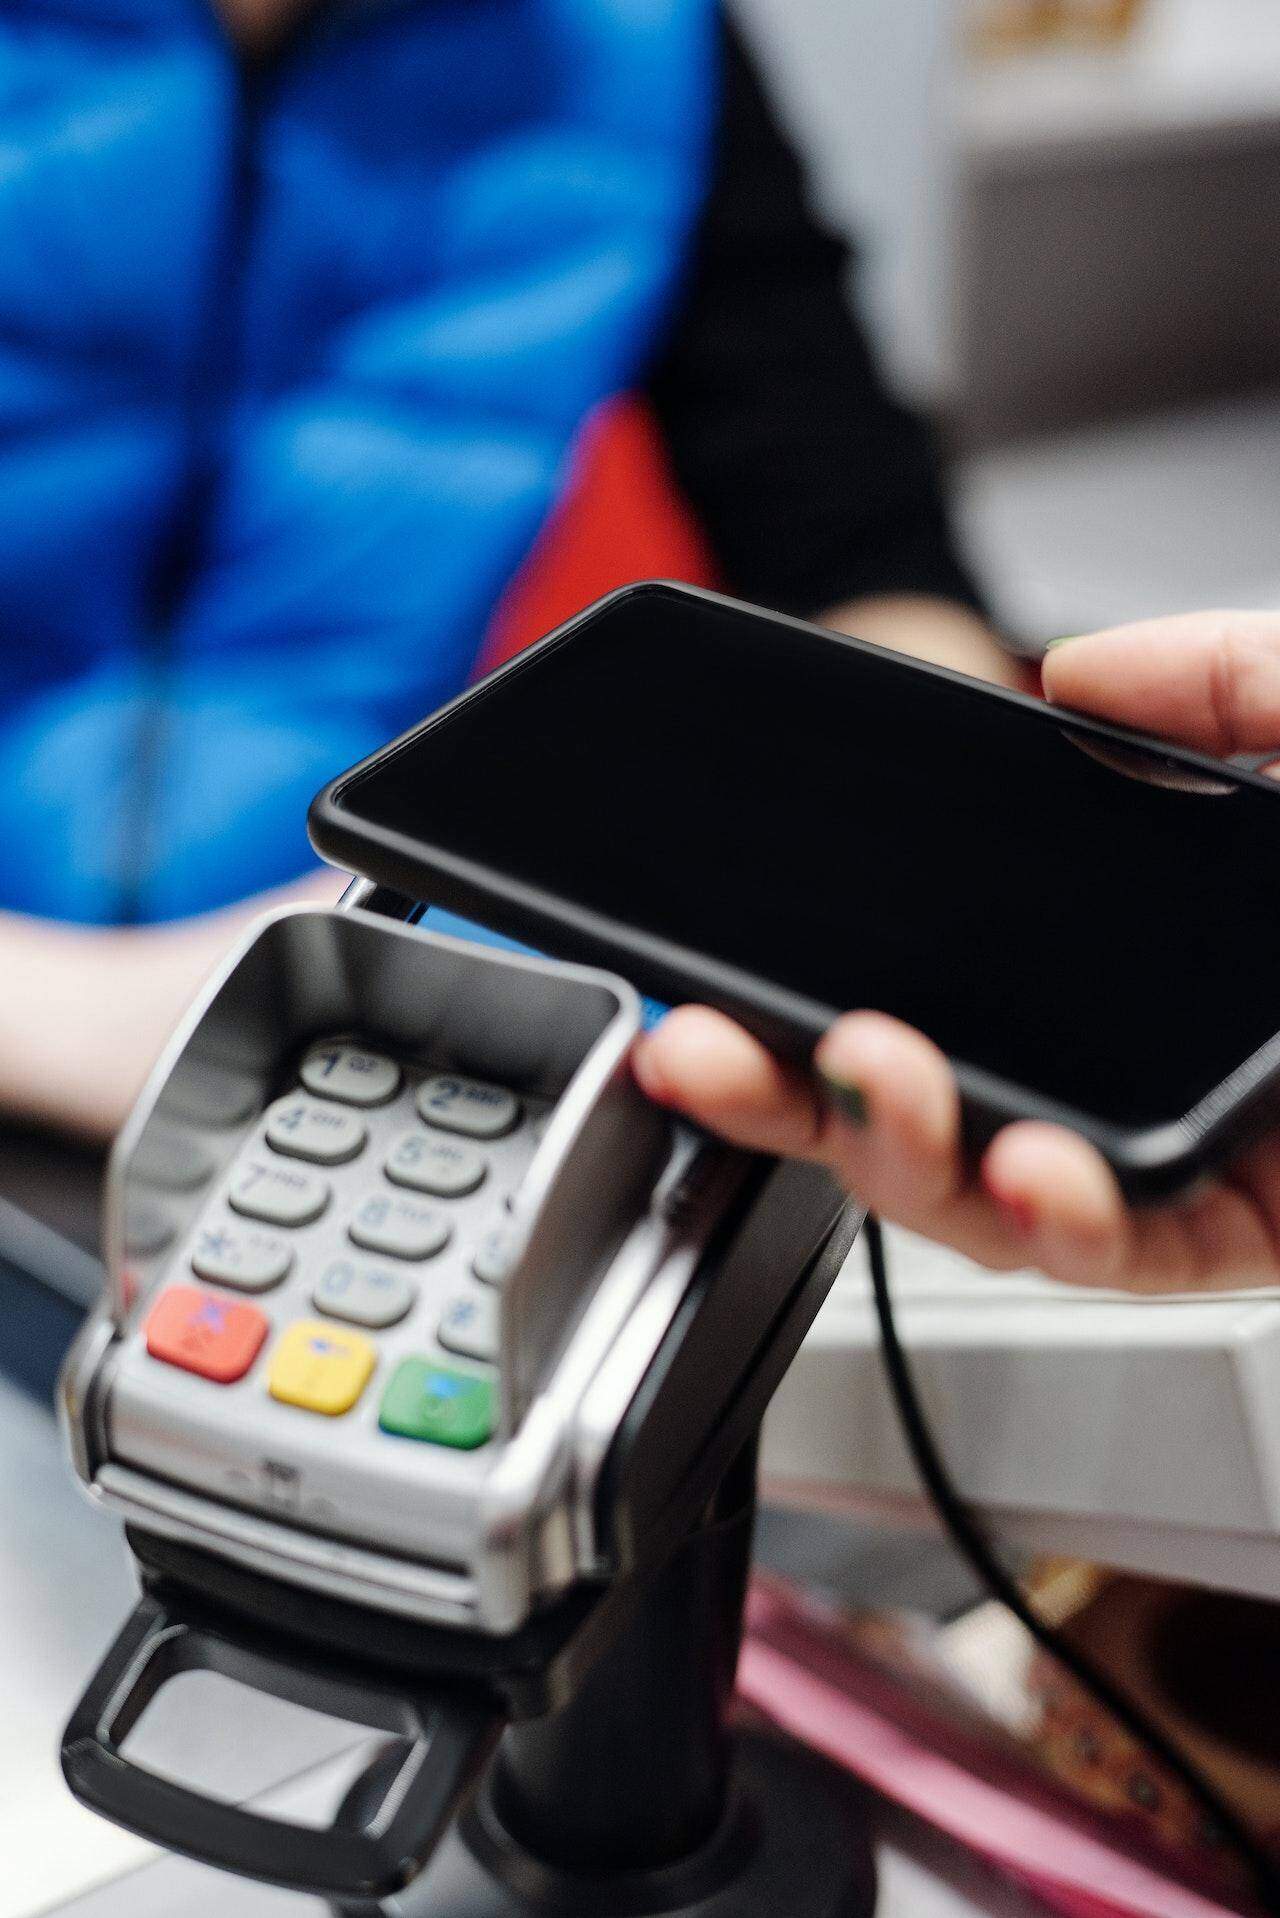 płatność NFC telefonem przy terminalu płatniczym 